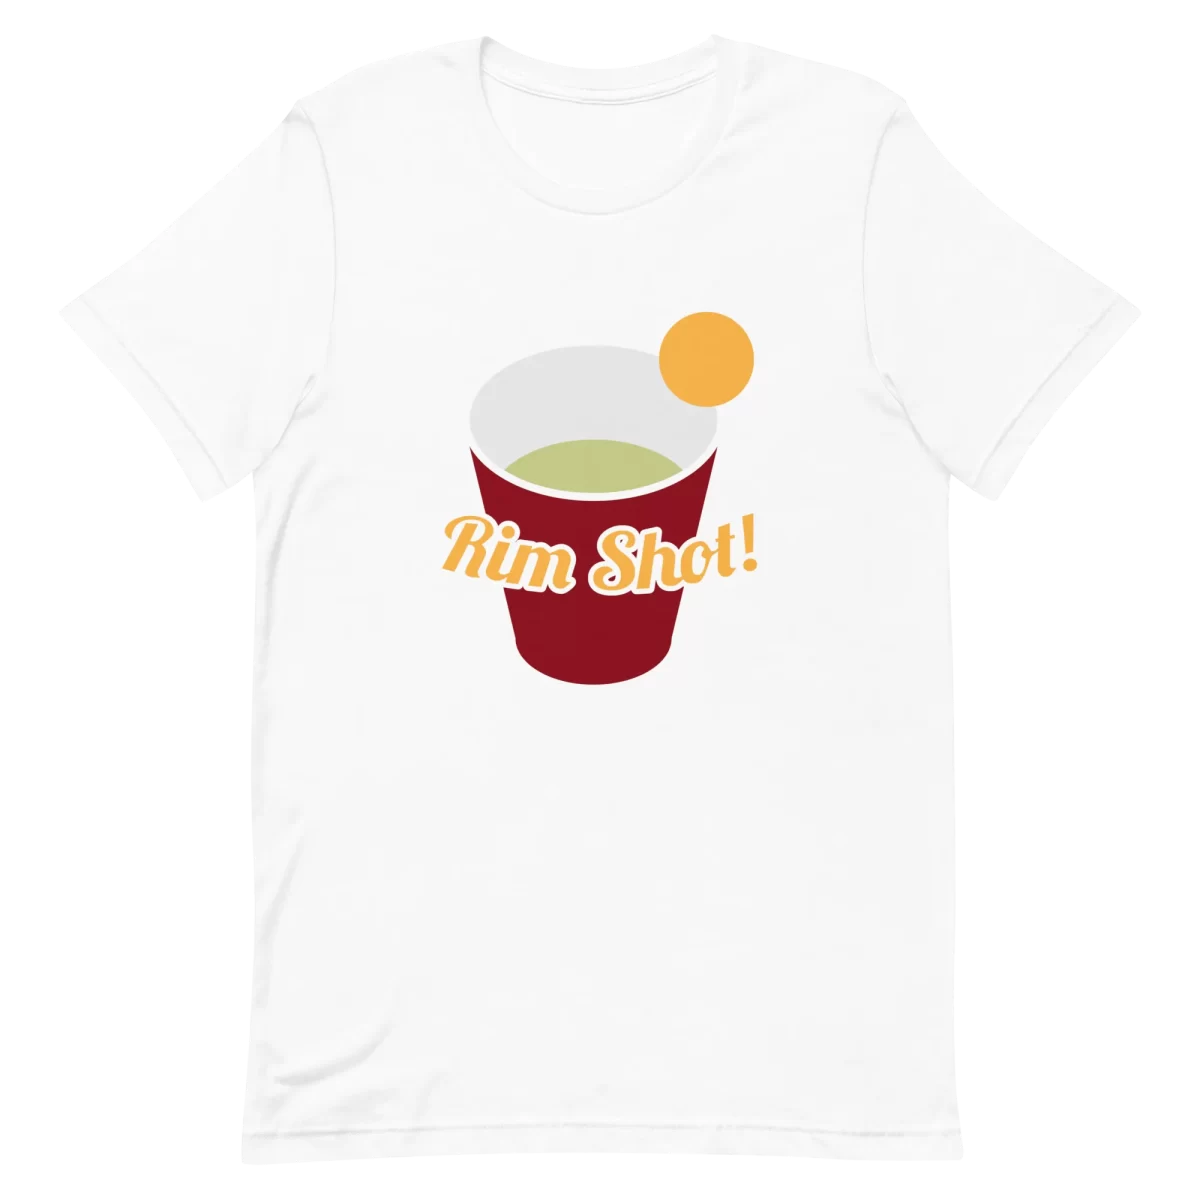 Unisex T-Shirt - Rim Shot! - White